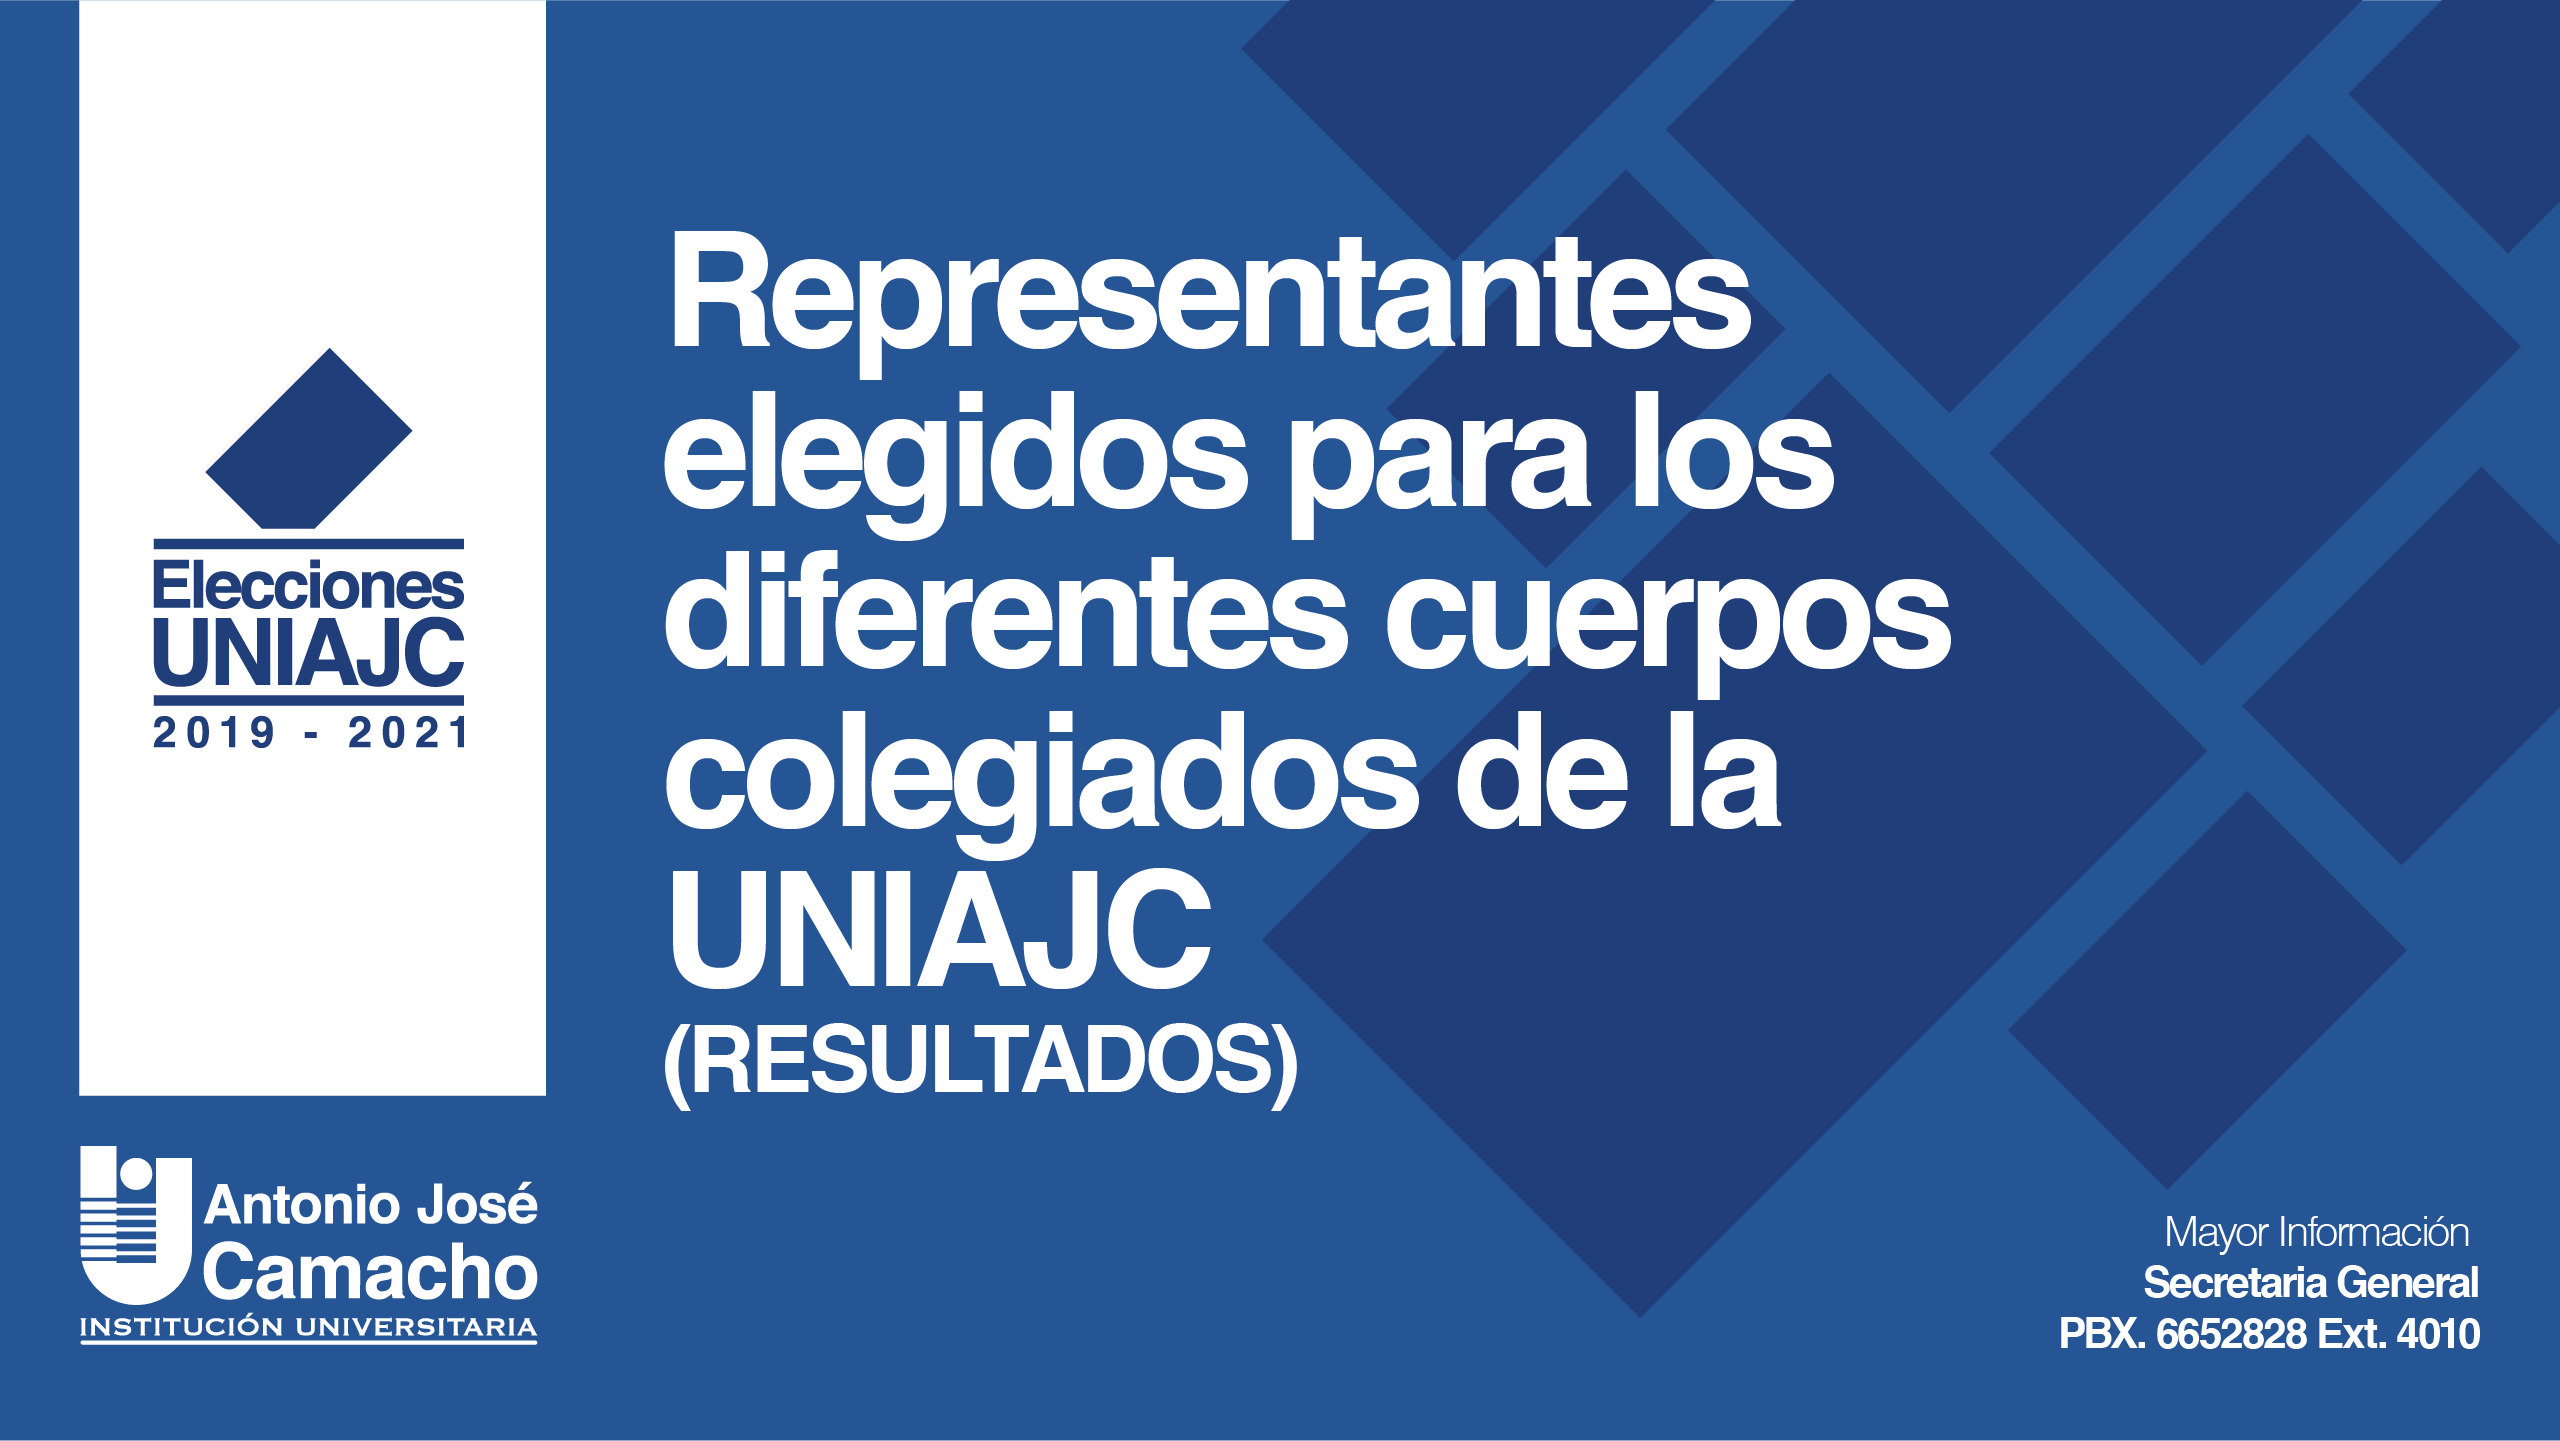 Elecciones UNIAJC 2019